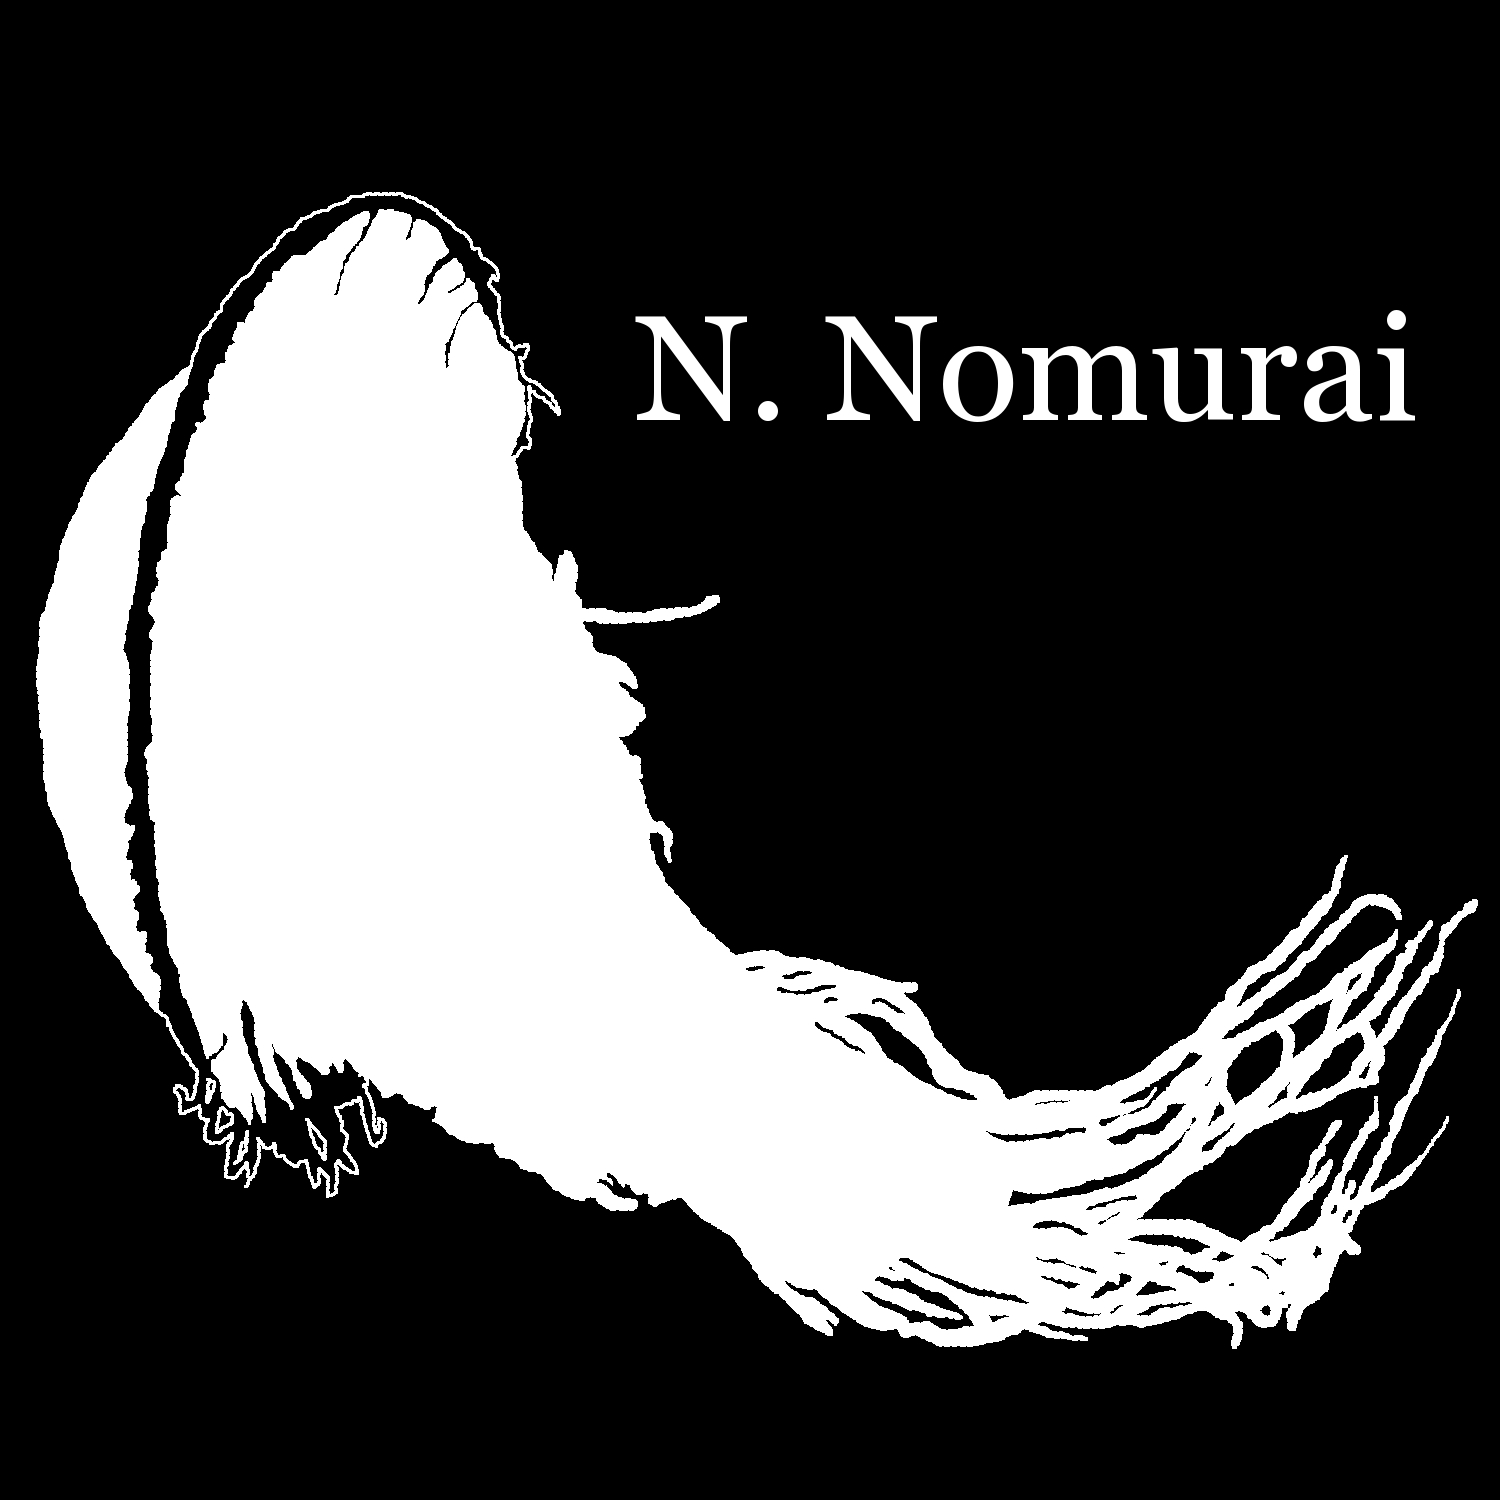 N. Nomurai